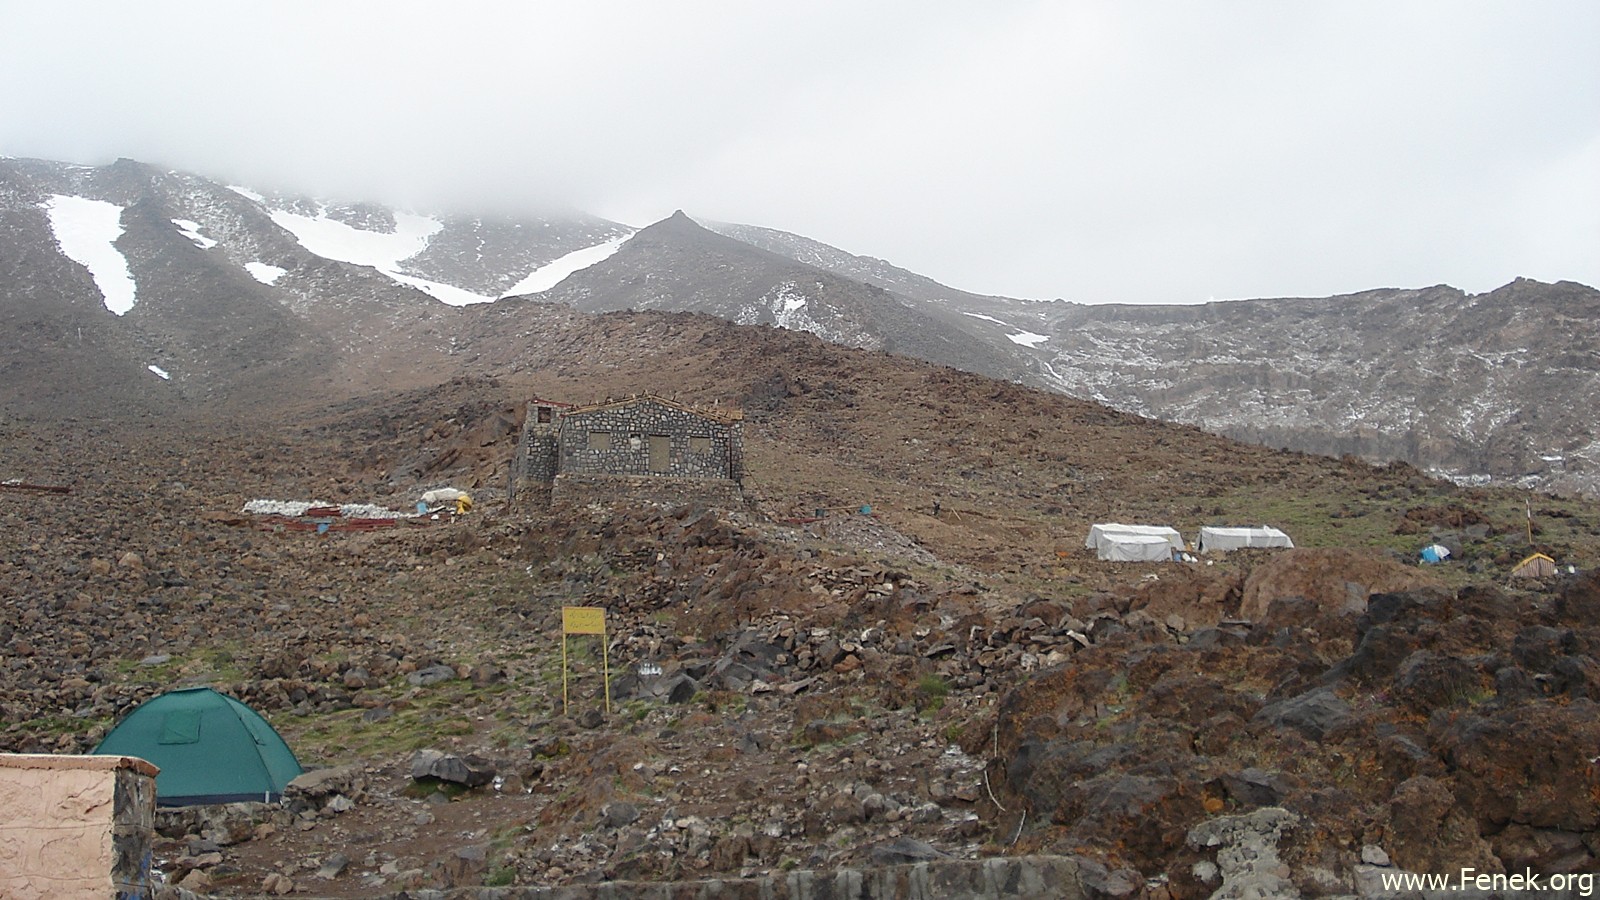 das Zeltlager auf 4'100m - die Hütte war im Bau und geschlossen